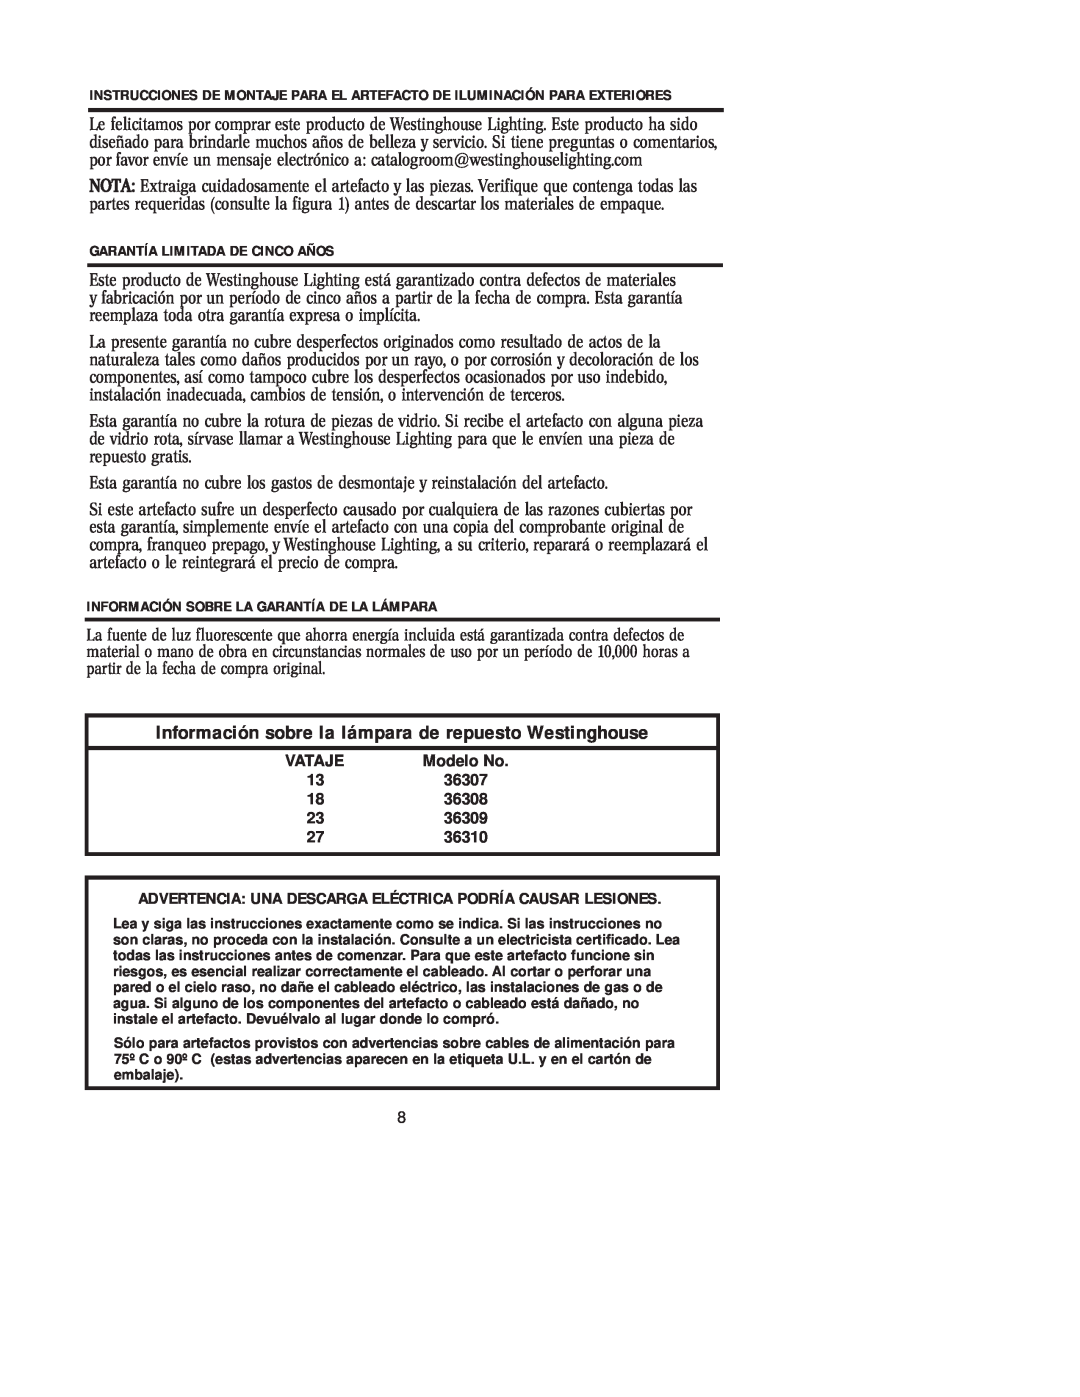 Westinghouse 36310, 36308, 36309 Garantía Limitada De Cinco Años, Información Sobre La Garantía De La Lámpara, Modelo No 